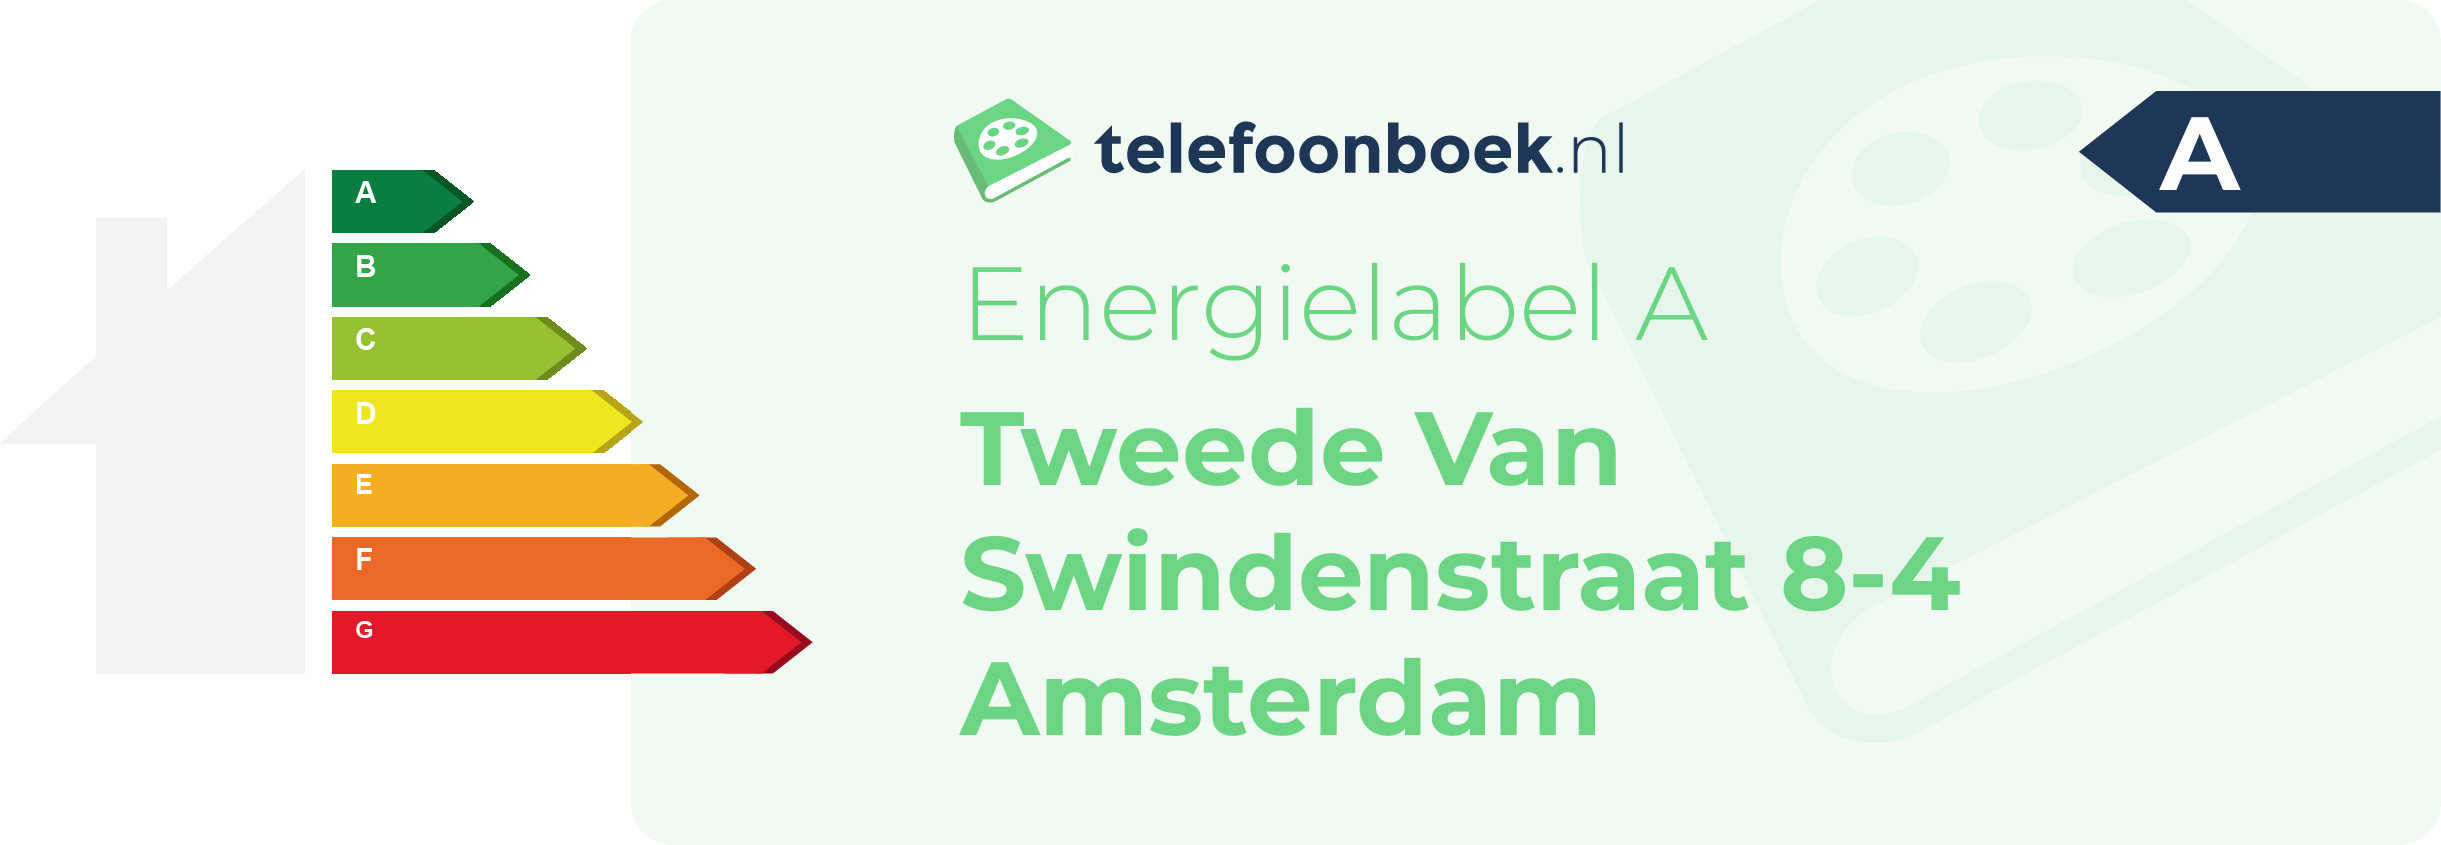 Energielabel Tweede Van Swindenstraat 8-4 Amsterdam